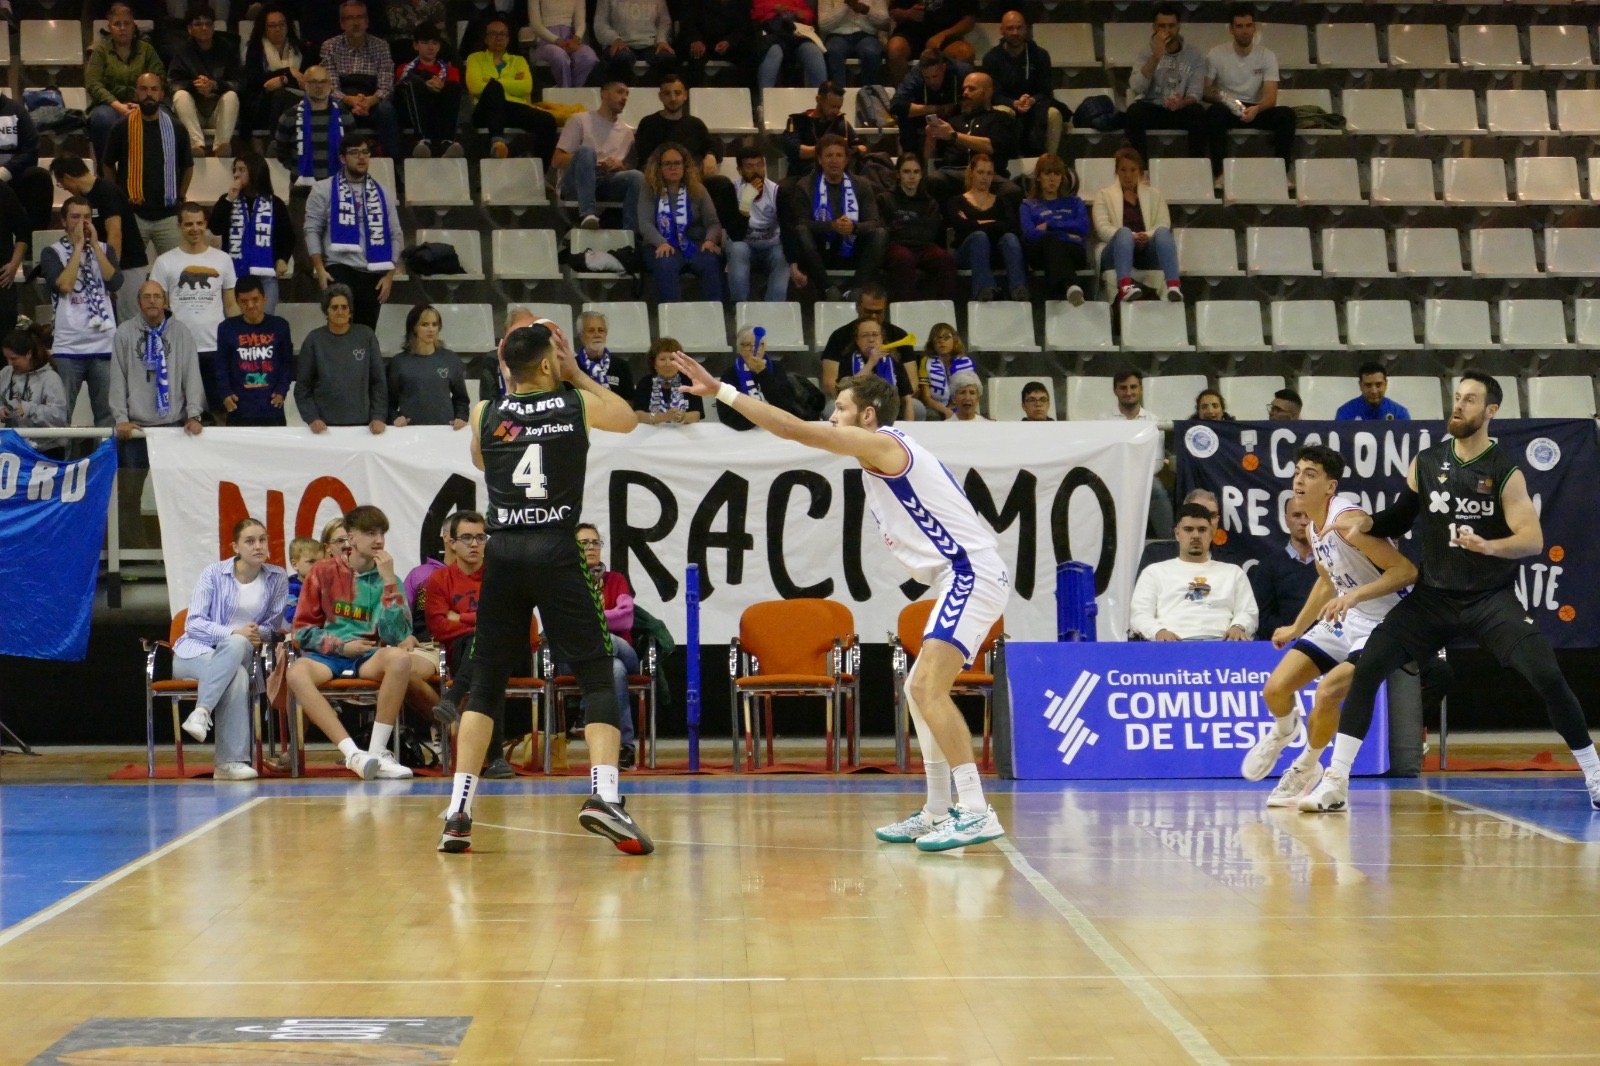 Polanco protege la bola ante Gudmunsson en la Jornada 27 de LEB Oro. | Imagen cortesía de Baloncesto Alicante.